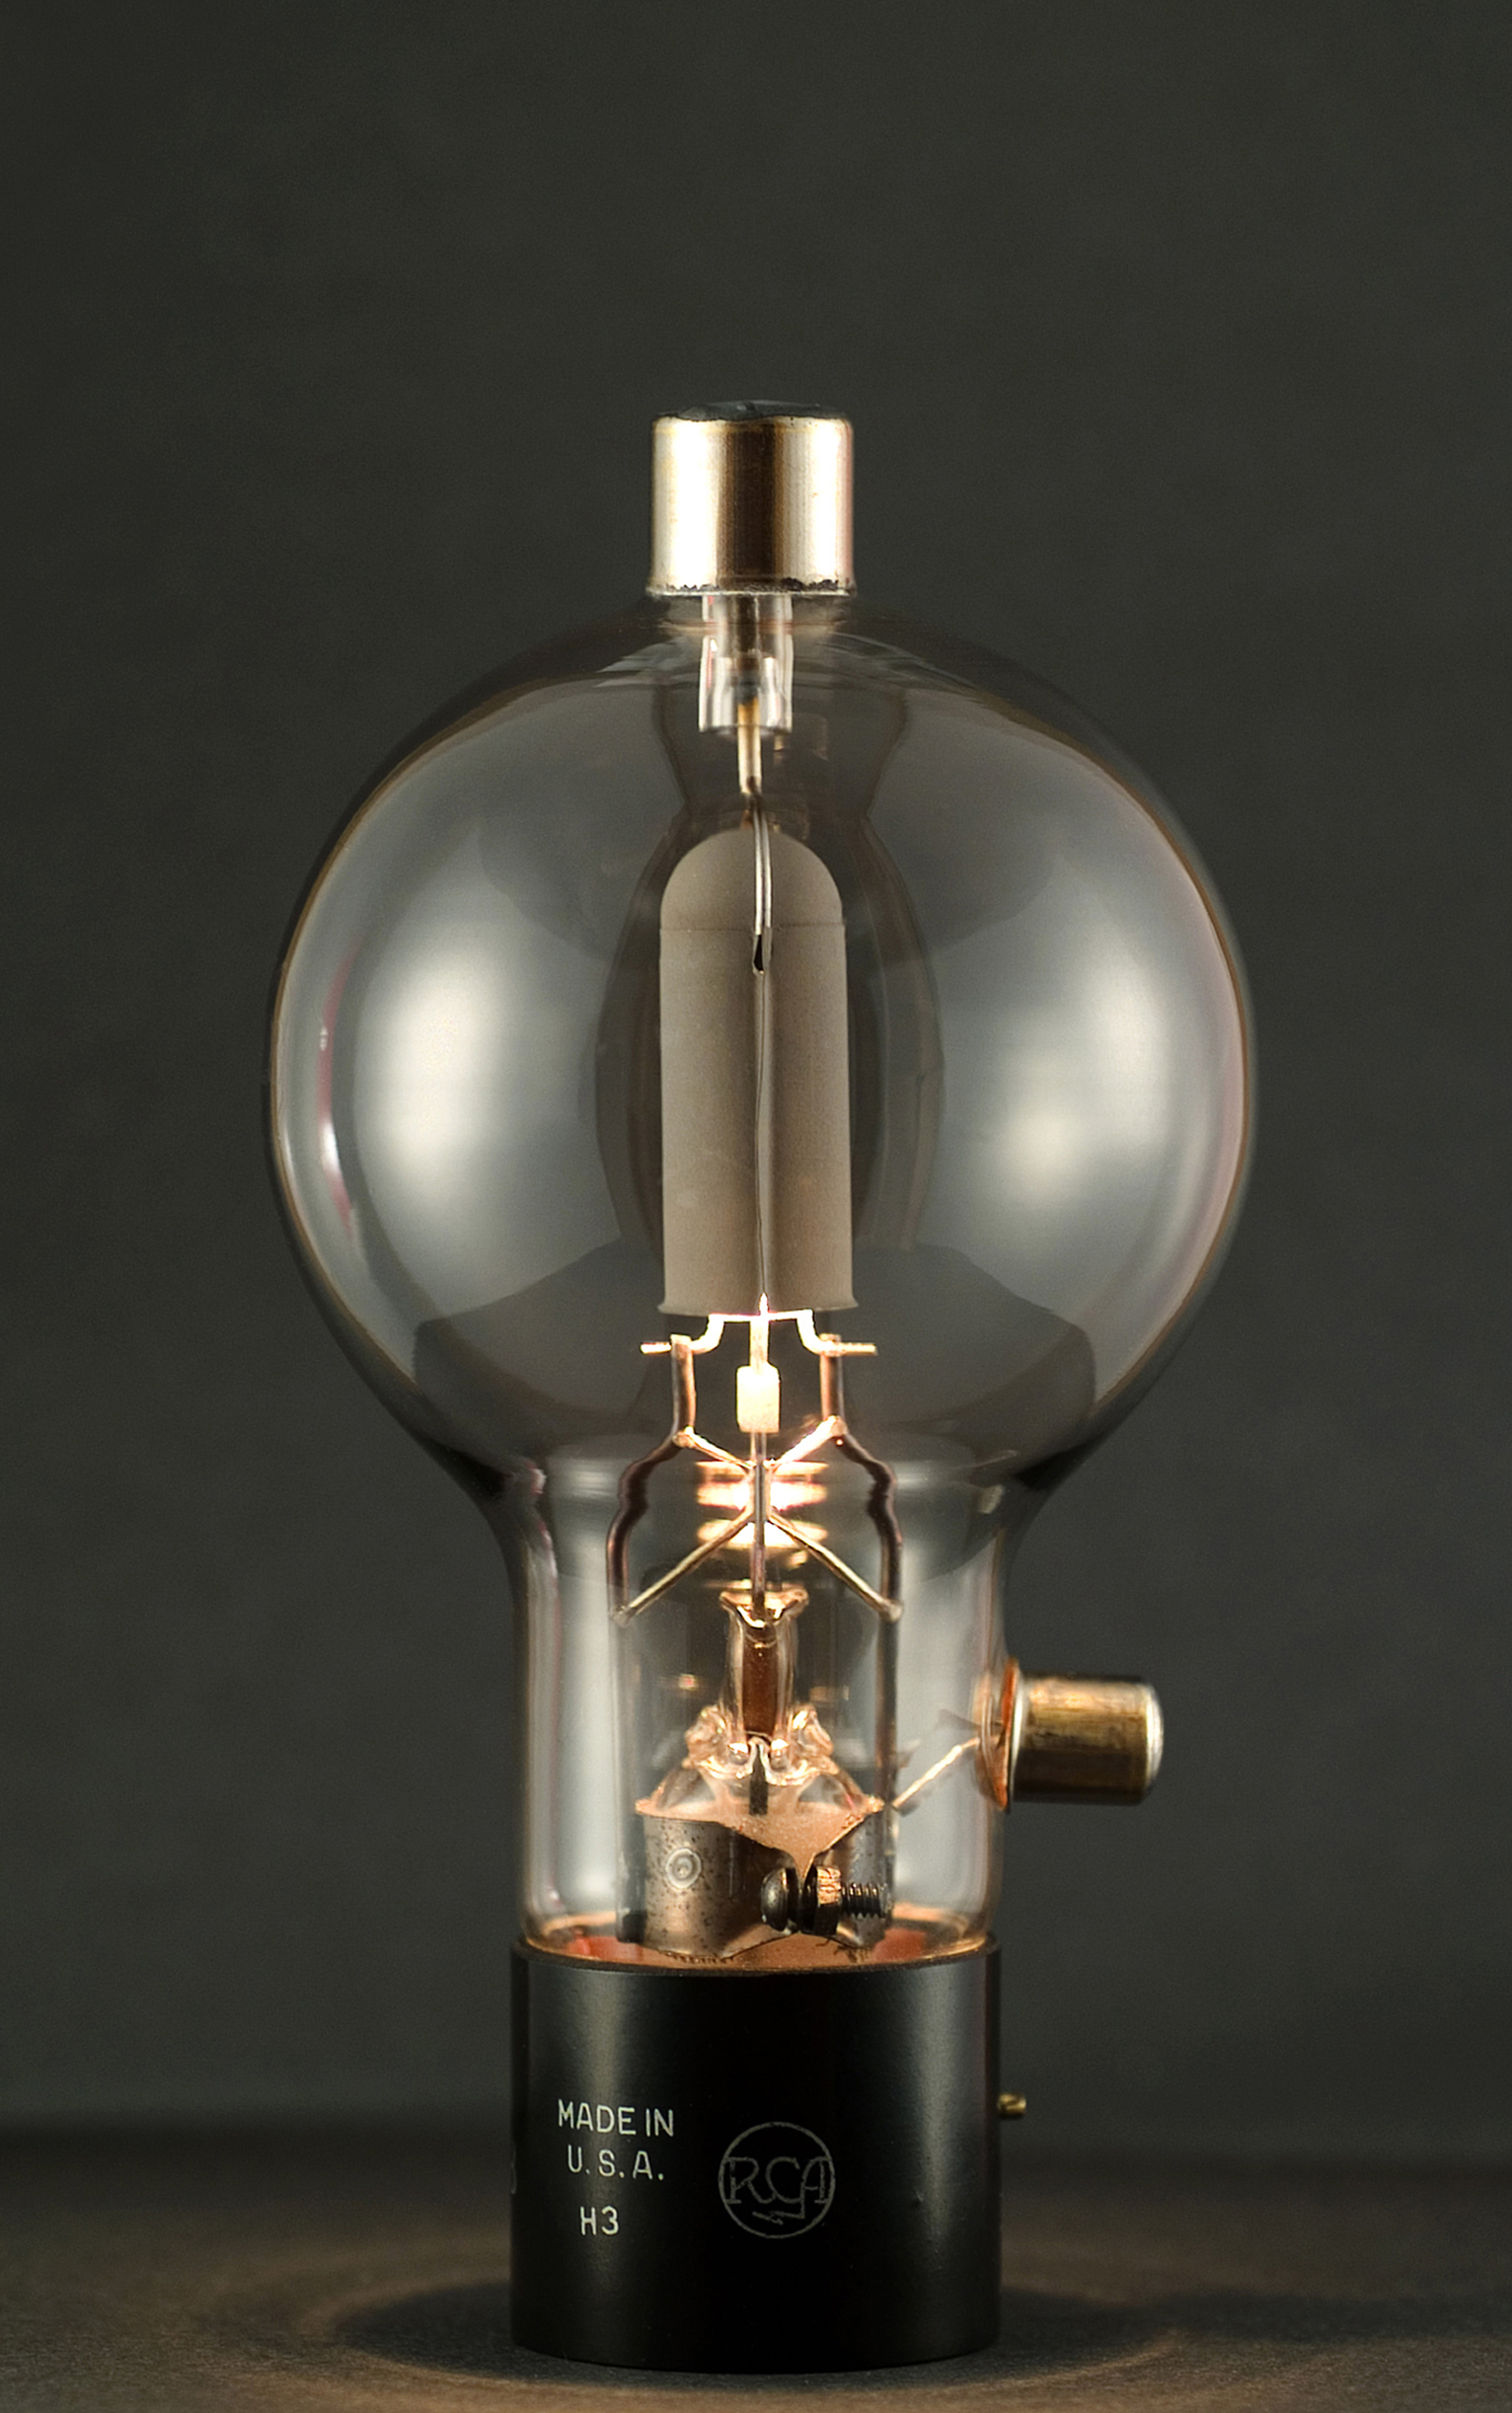 Foto de la lámpara incandescente de Edison.